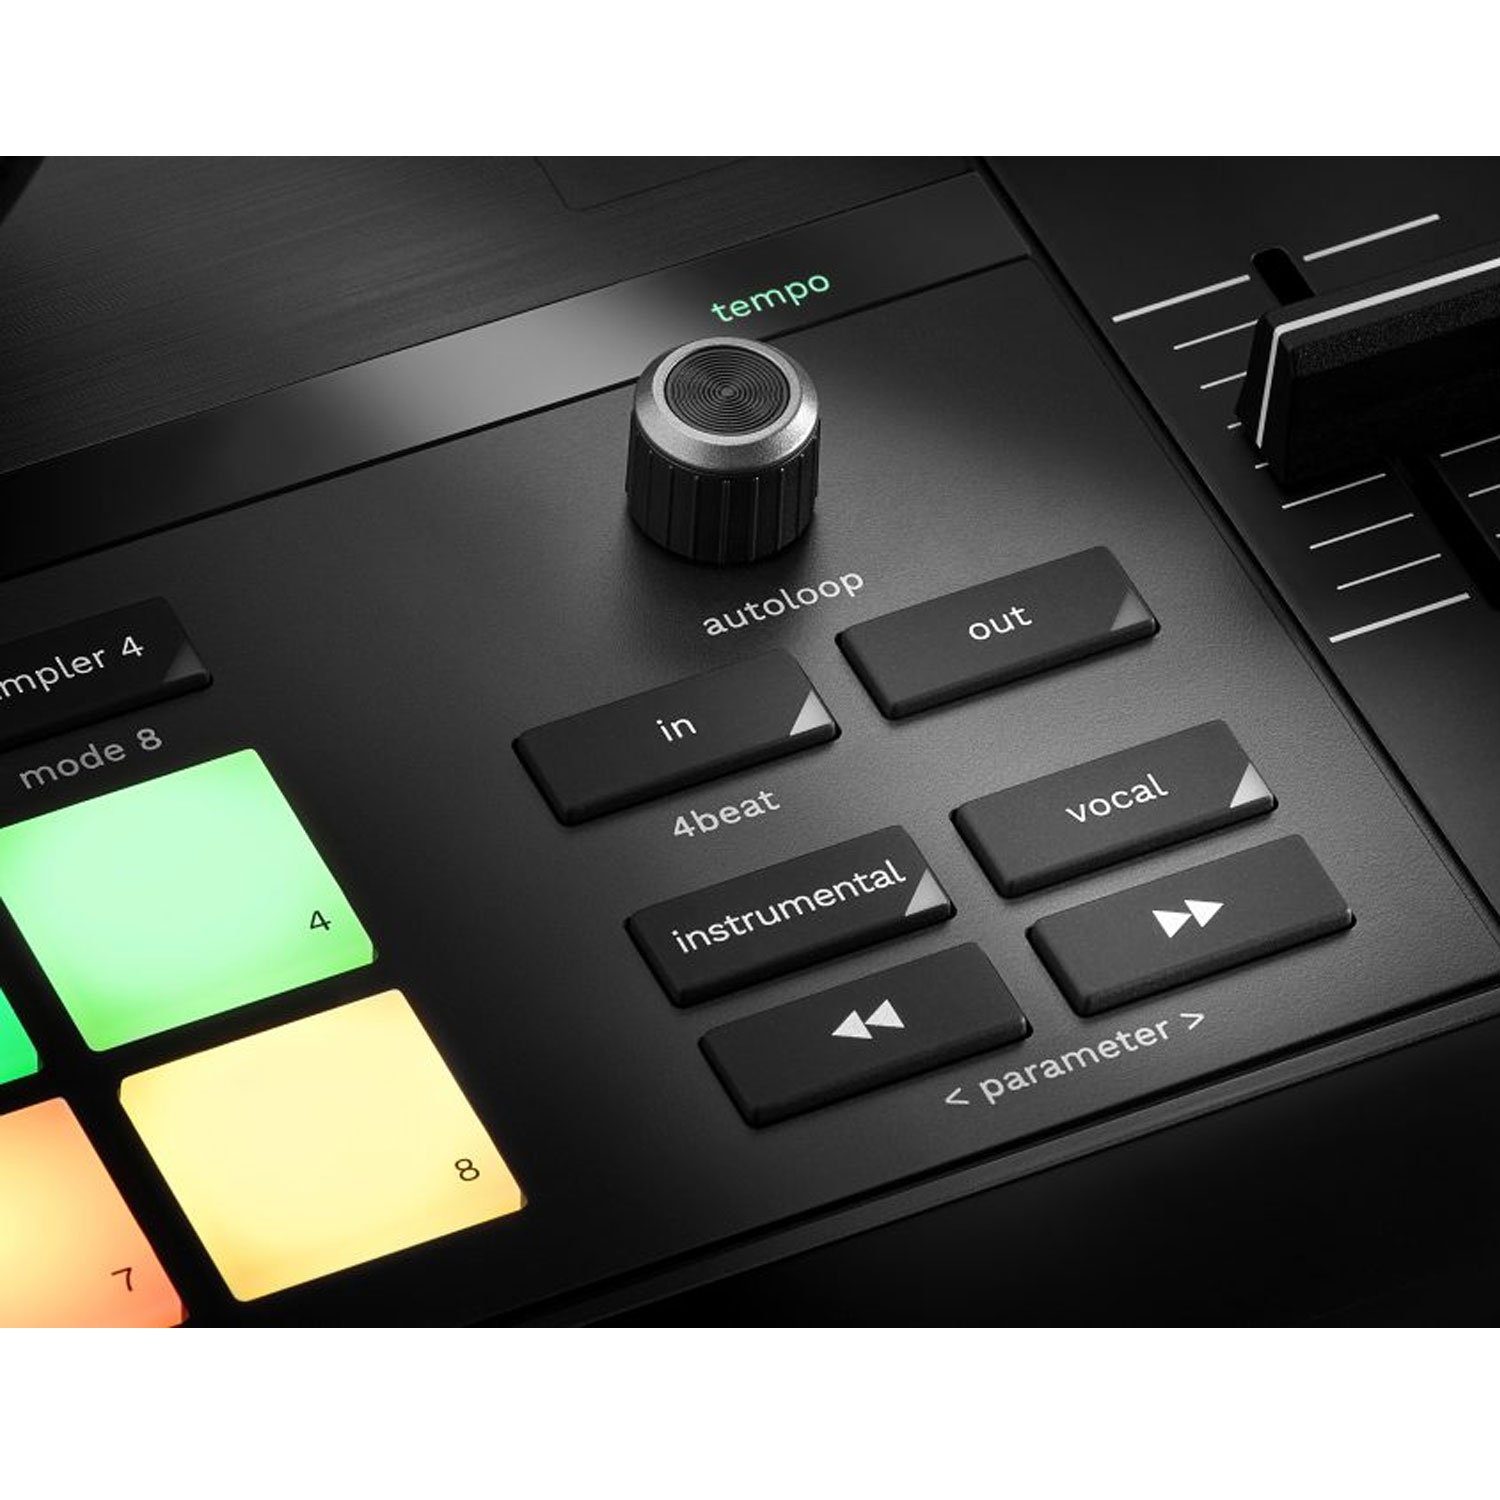 USB-DJ-Pult, Controller DJControl DJ-Software DJ T-7 Inpulse Inkl 2-Deck HERCULES